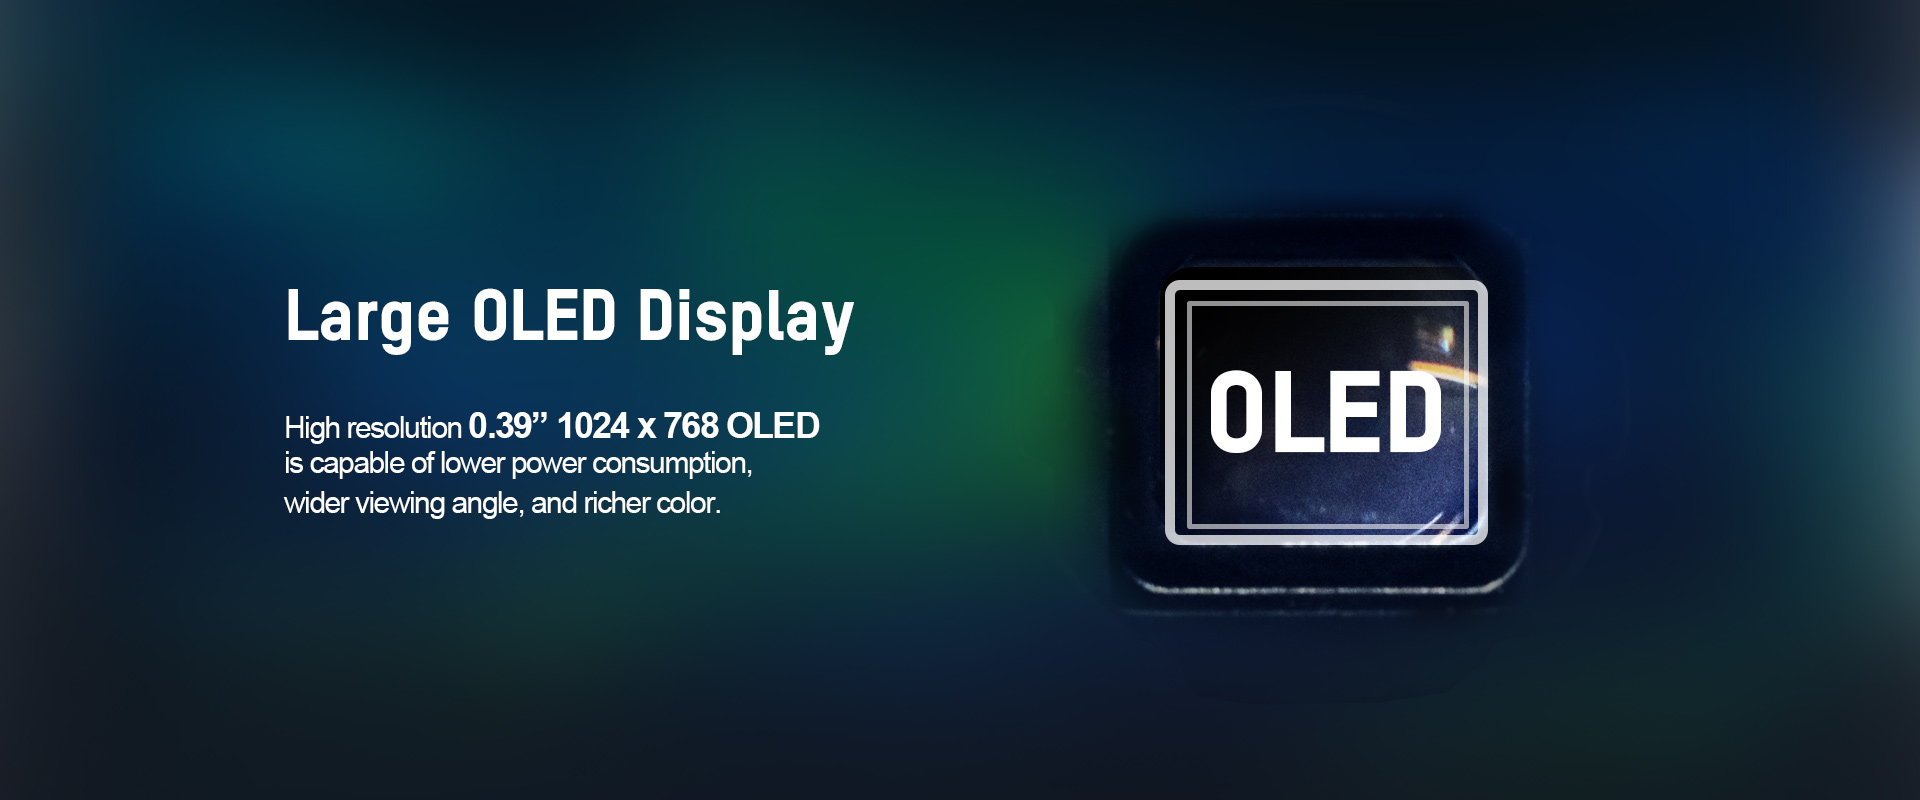 Large OLED Display_THUNDERScope